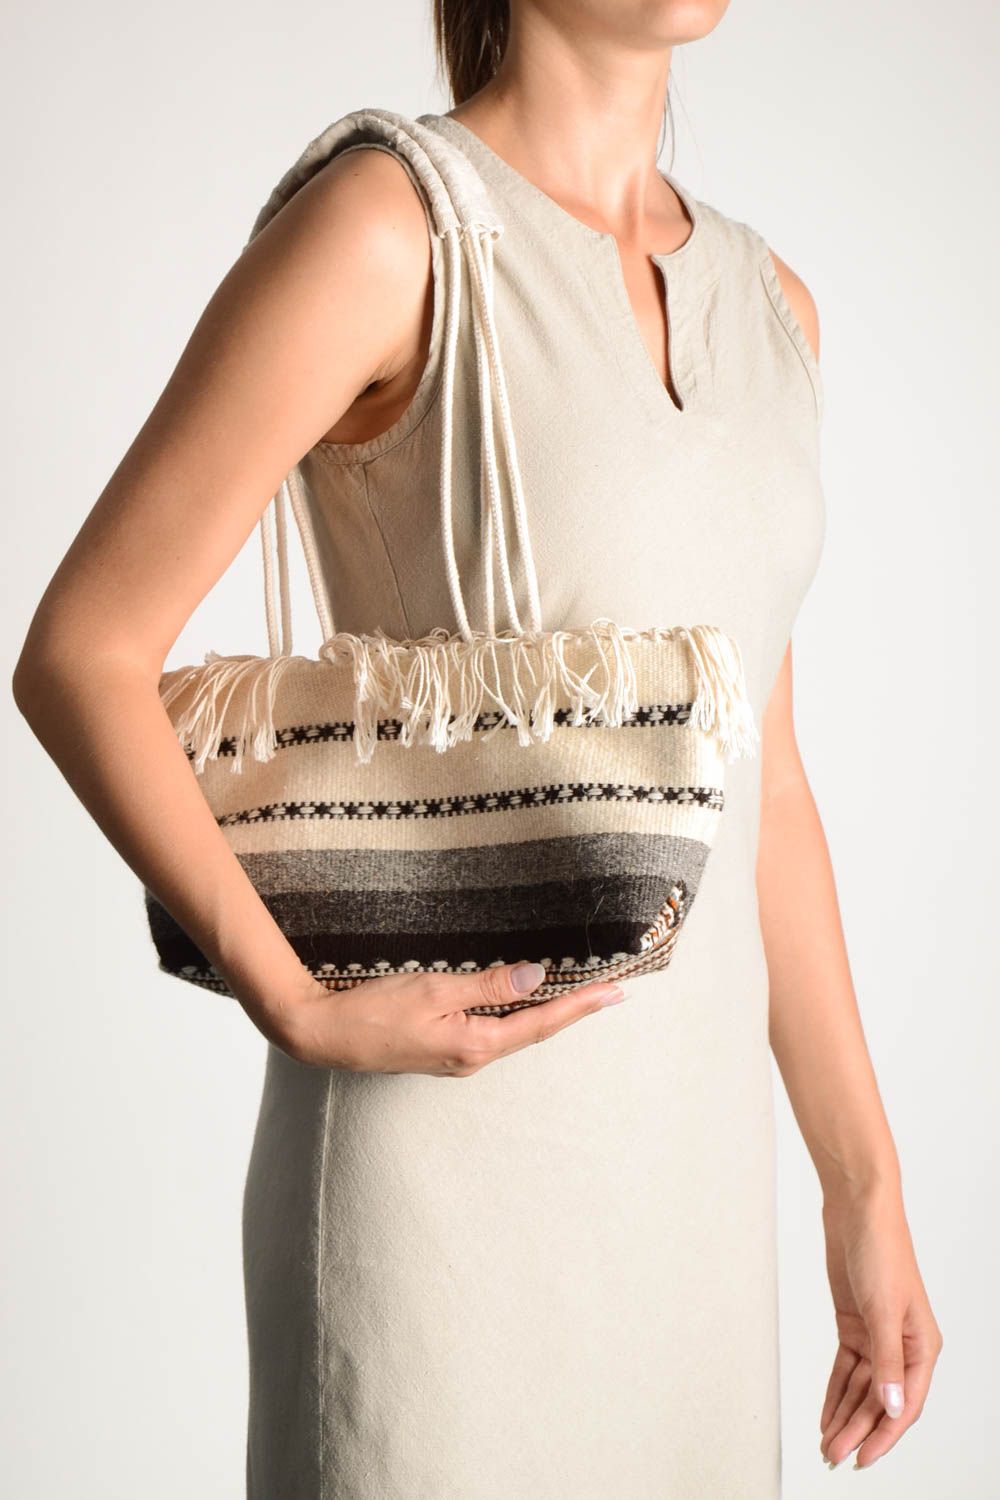 Handmade Accessoire für Frauen Damen Tasche aus Textil gestreifte Umhänge Tasche foto 1